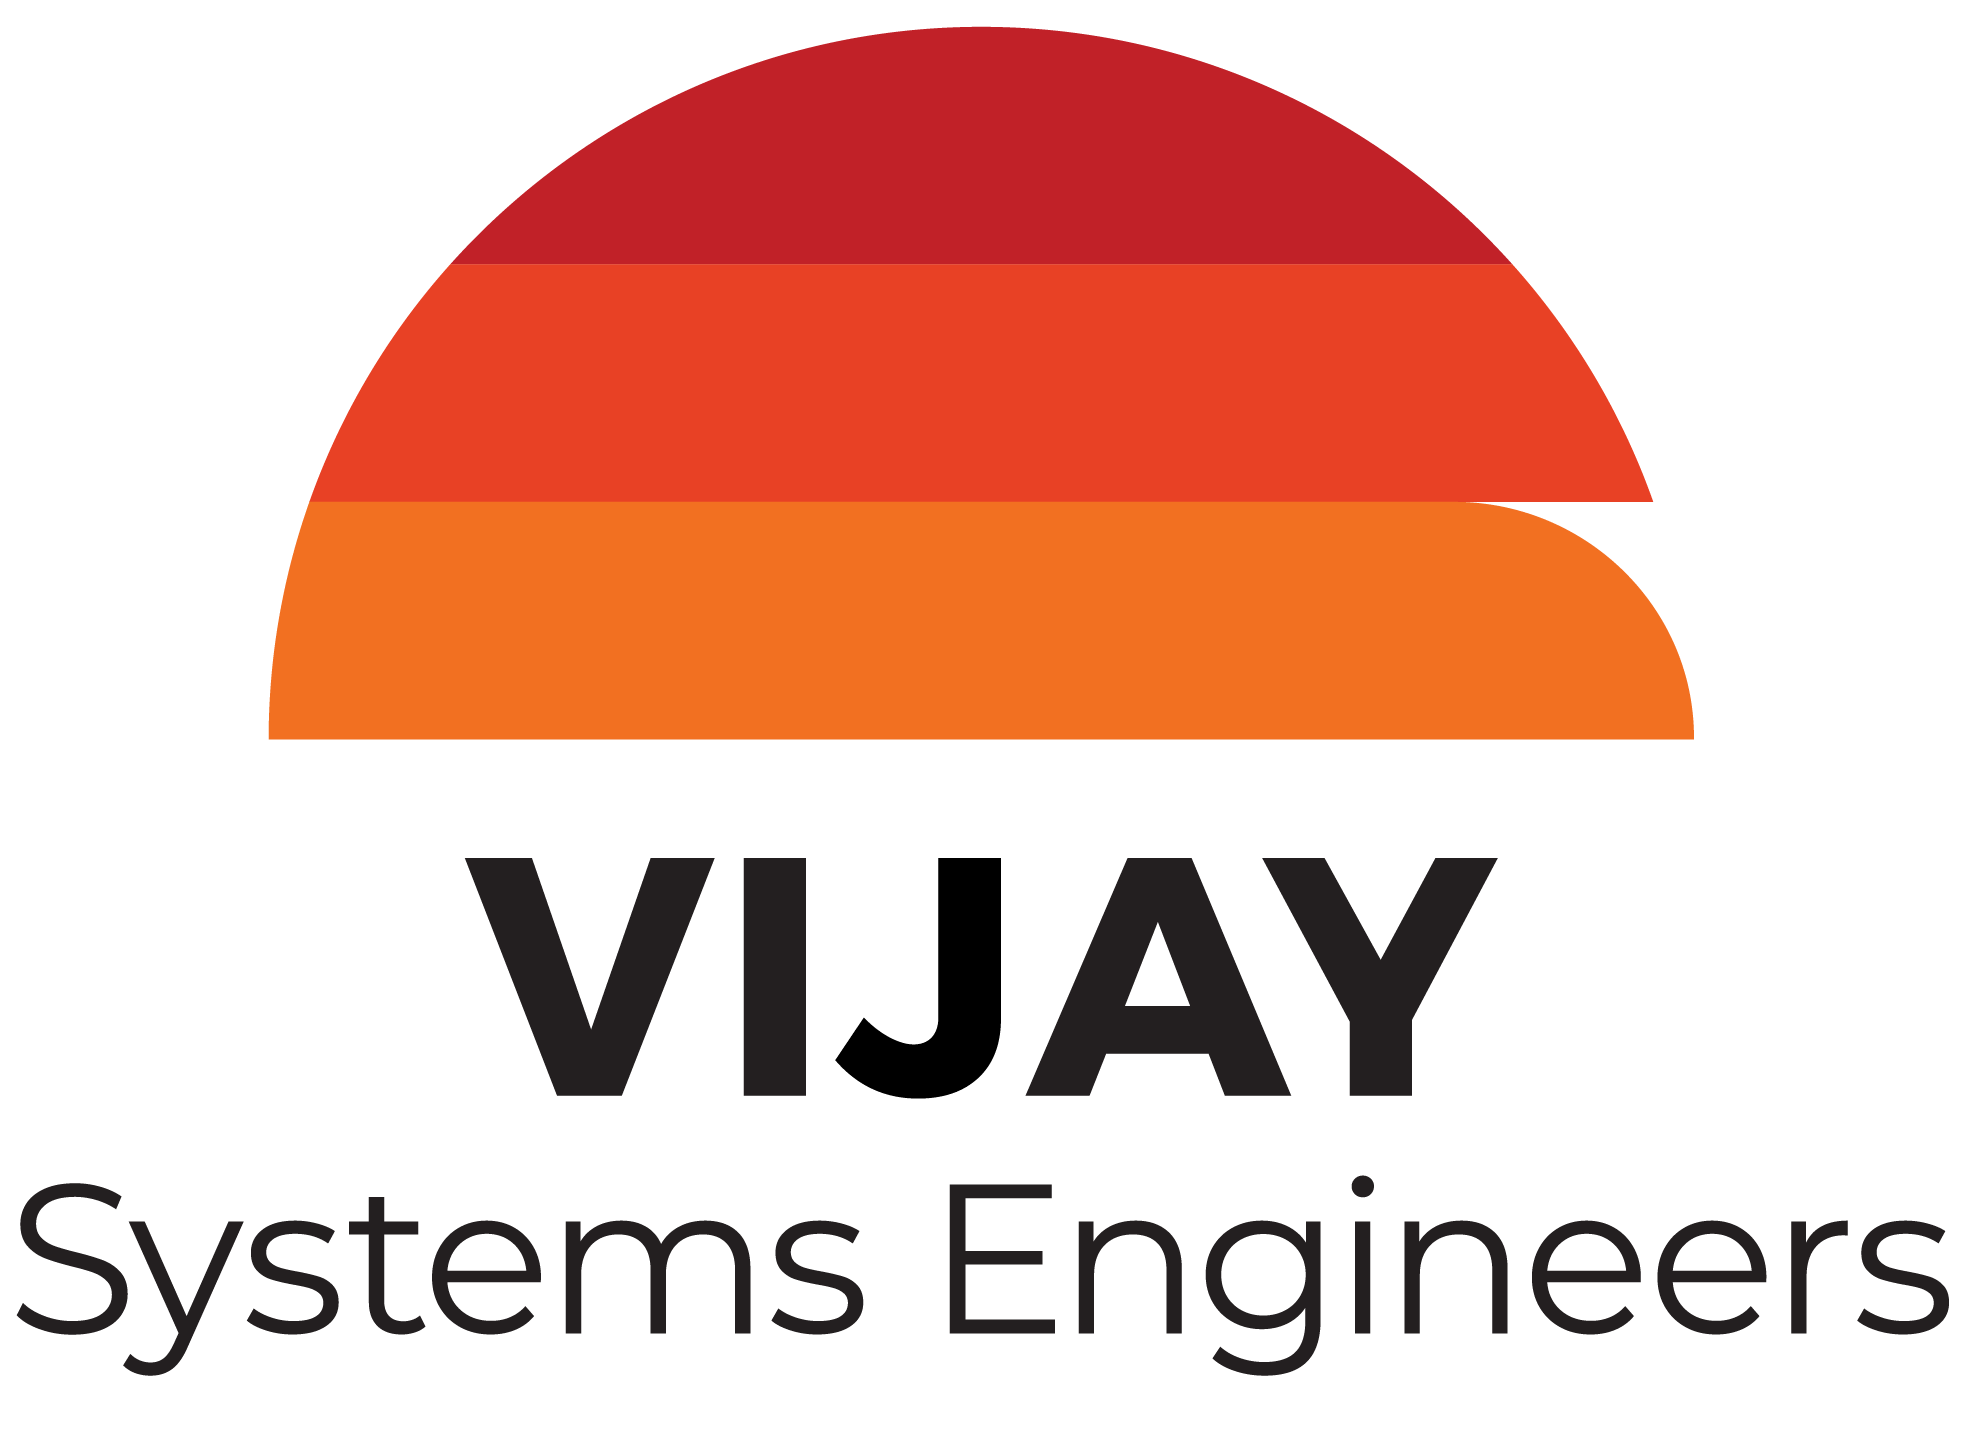 Vijay Systems